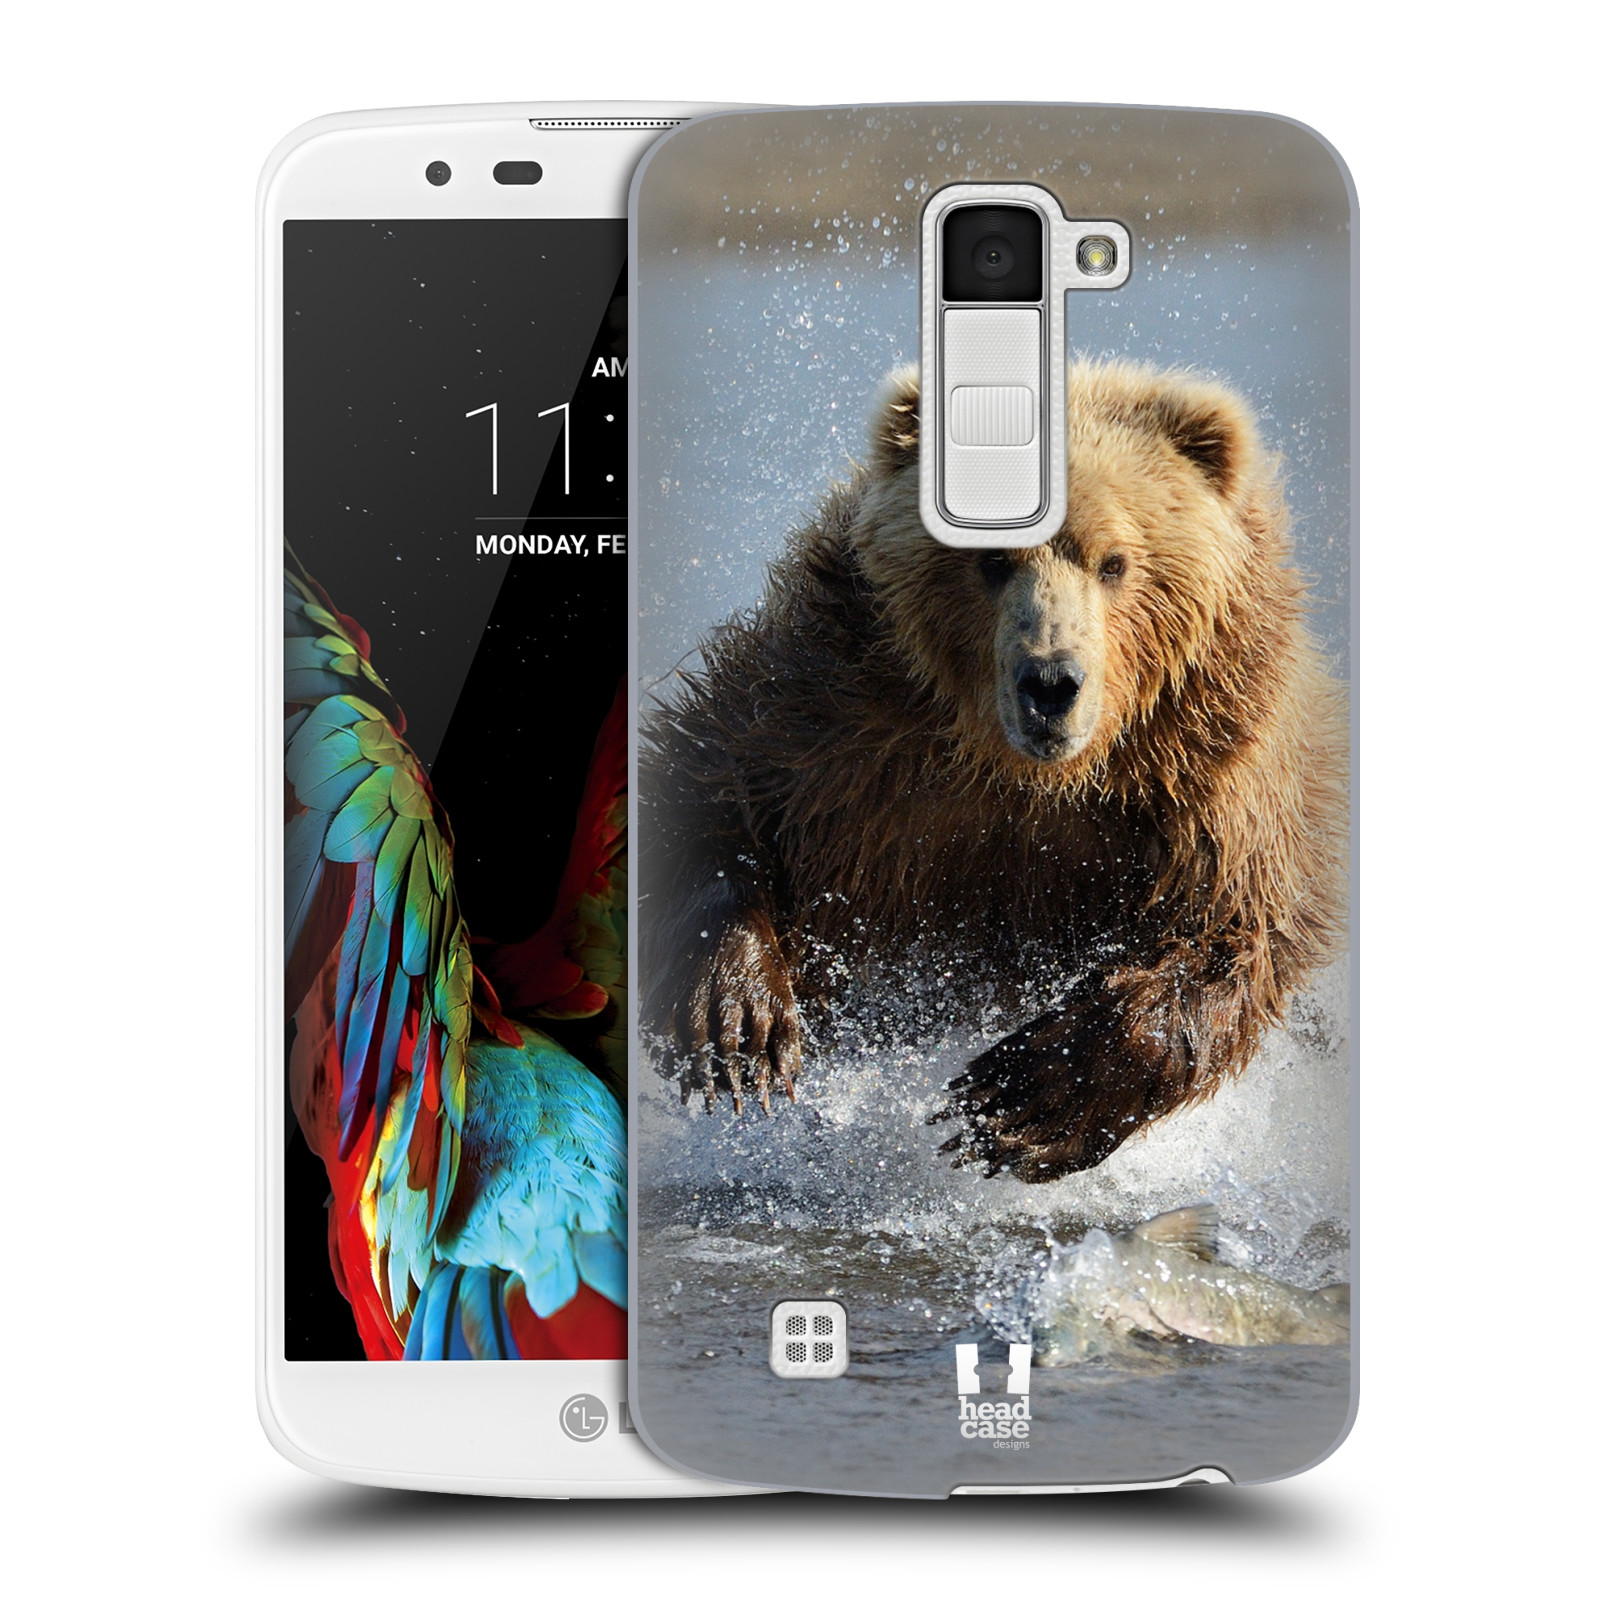 HEAD CASE plastový obal na mobil LG K10 vzor Divočina, Divoký život a zvířata foto MEDVĚD GRIZZLY HŇEDÁ